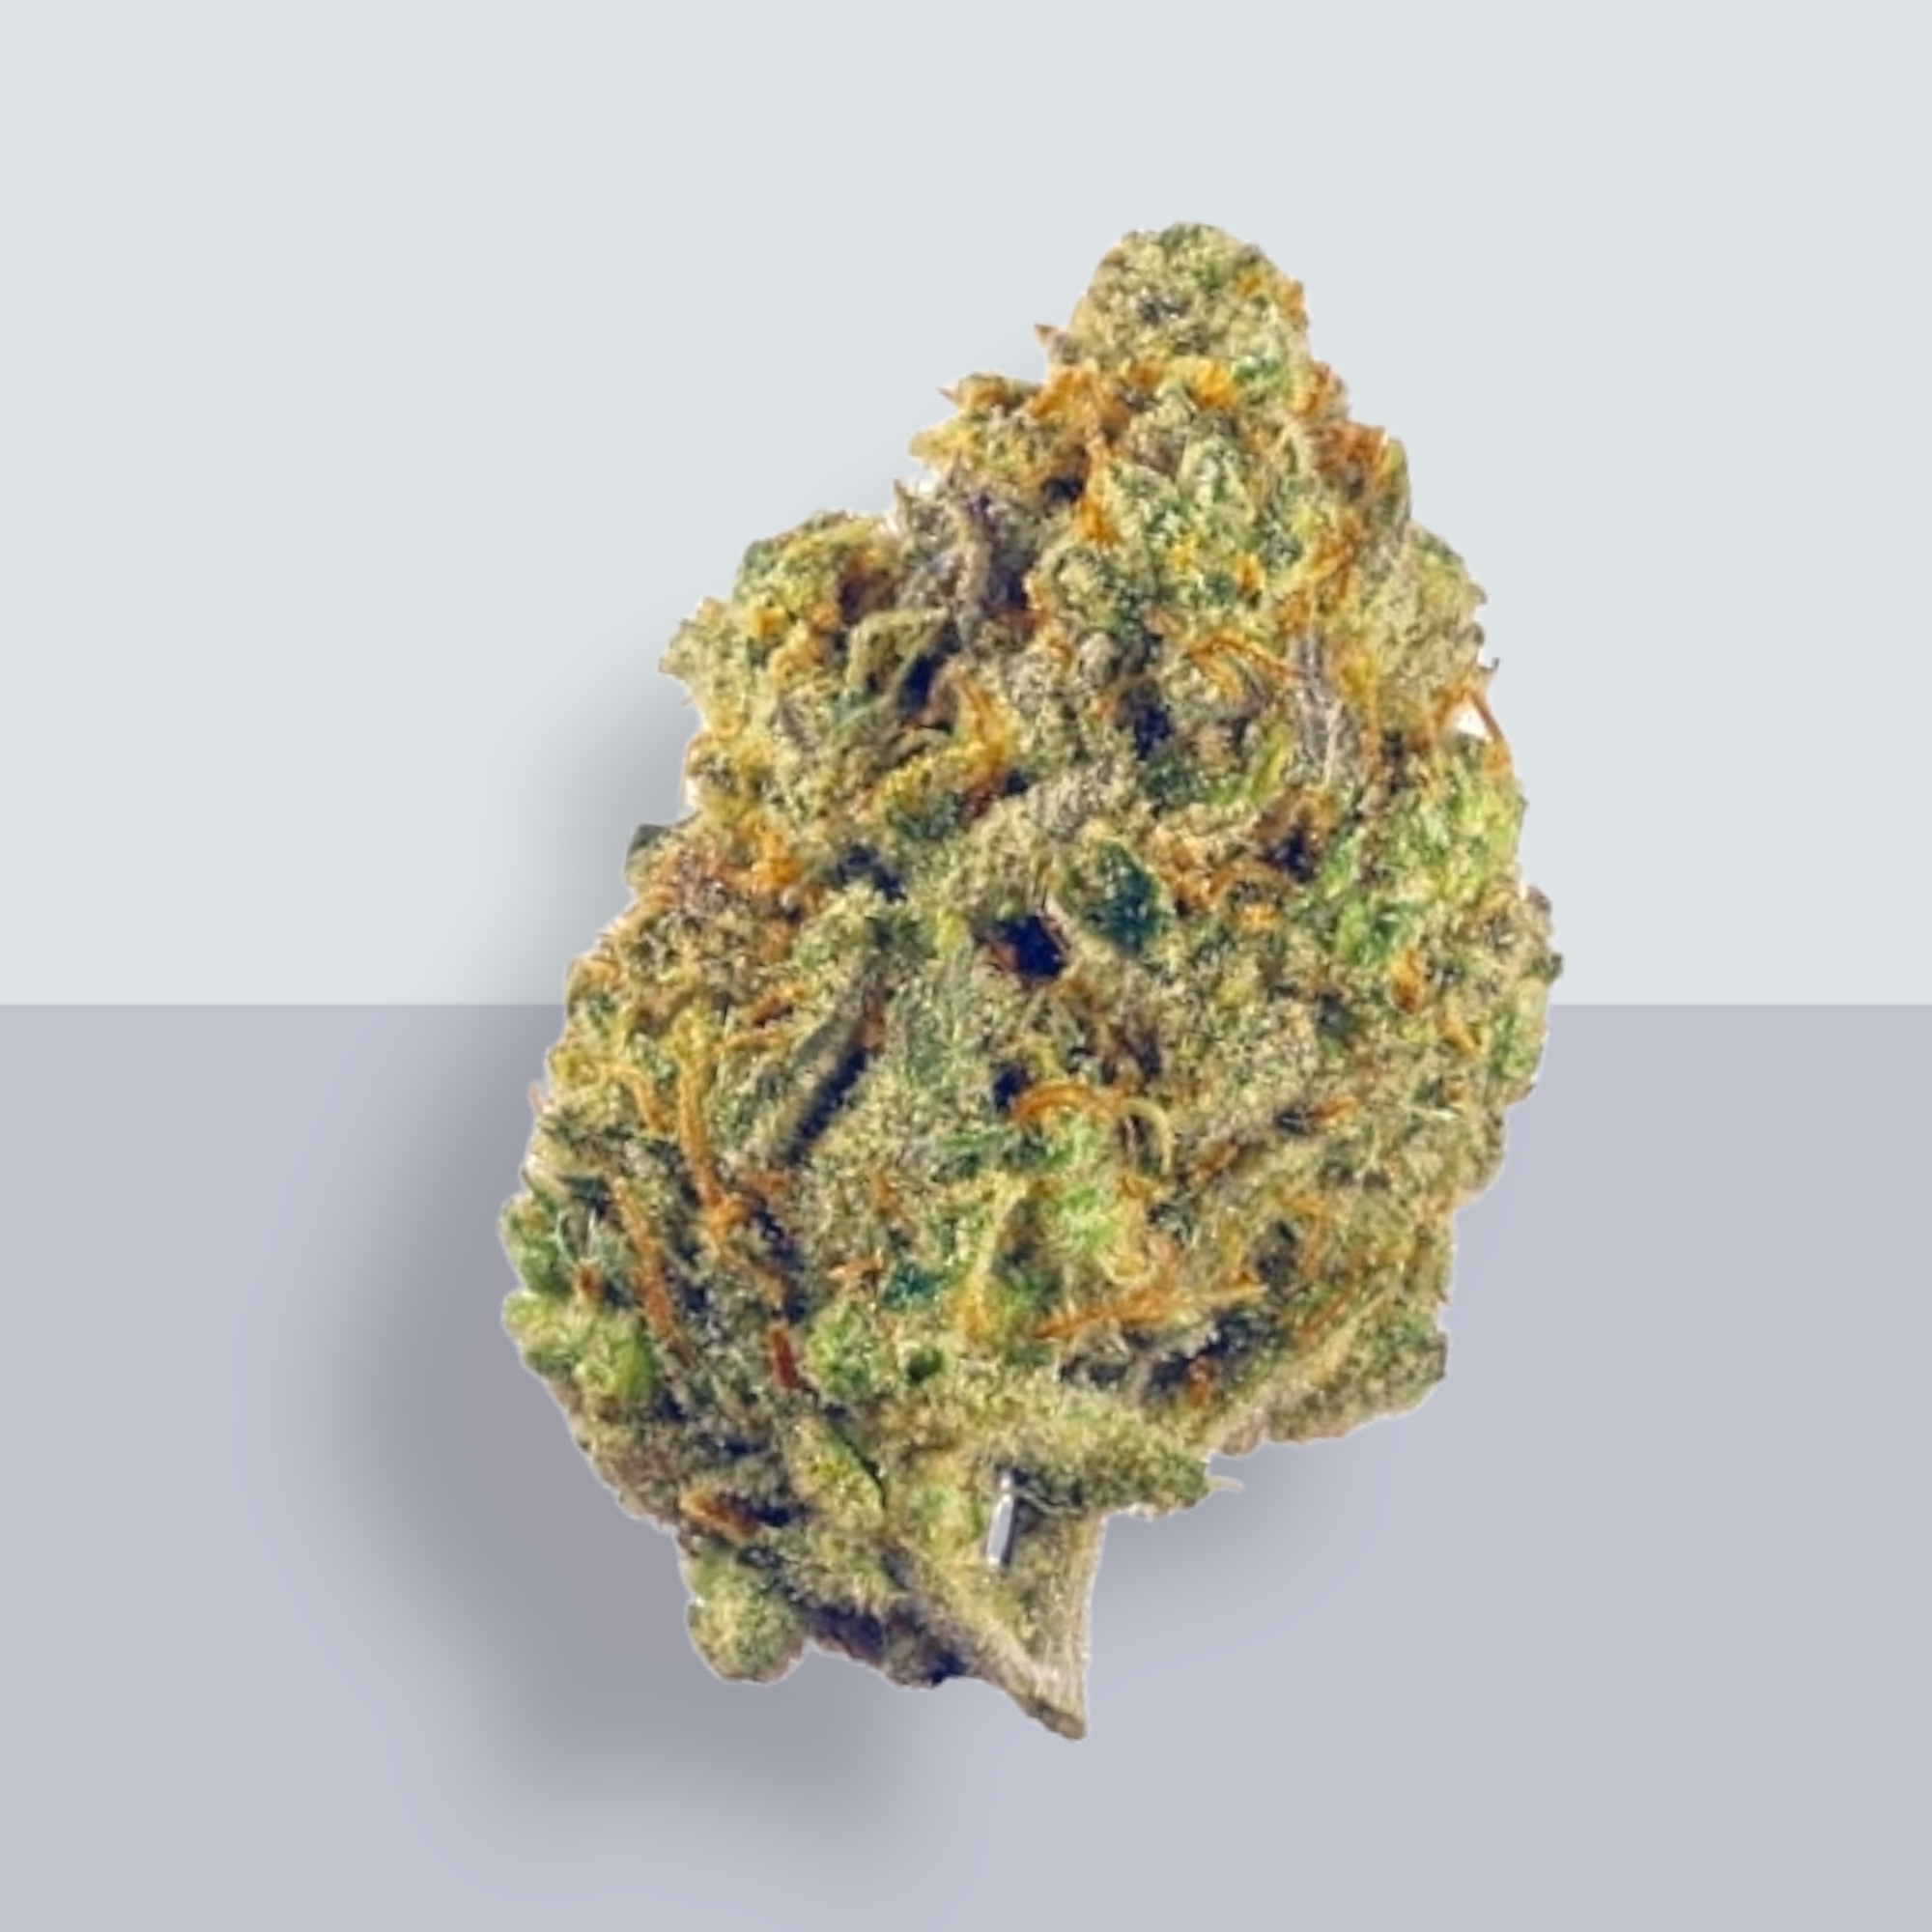 Lilac Diesel Colorado's Tastiest Buds